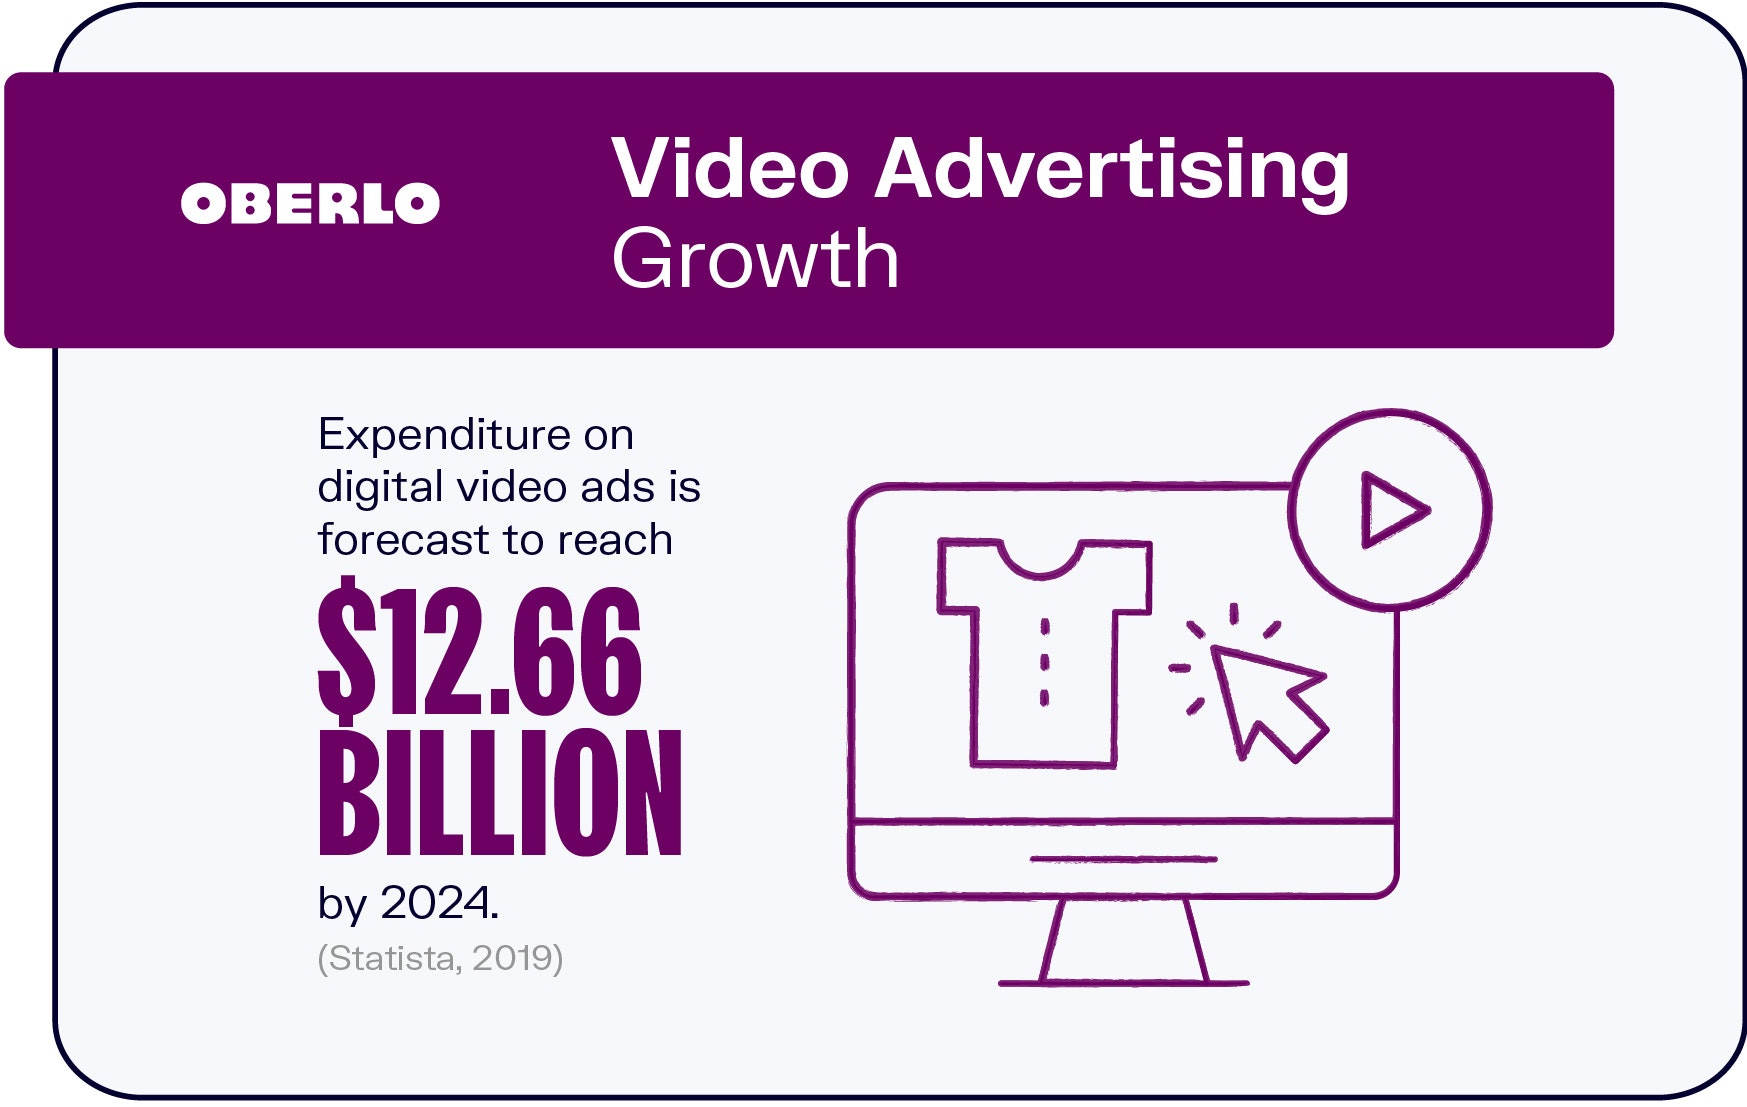 Crecimiento de la publicidad en video